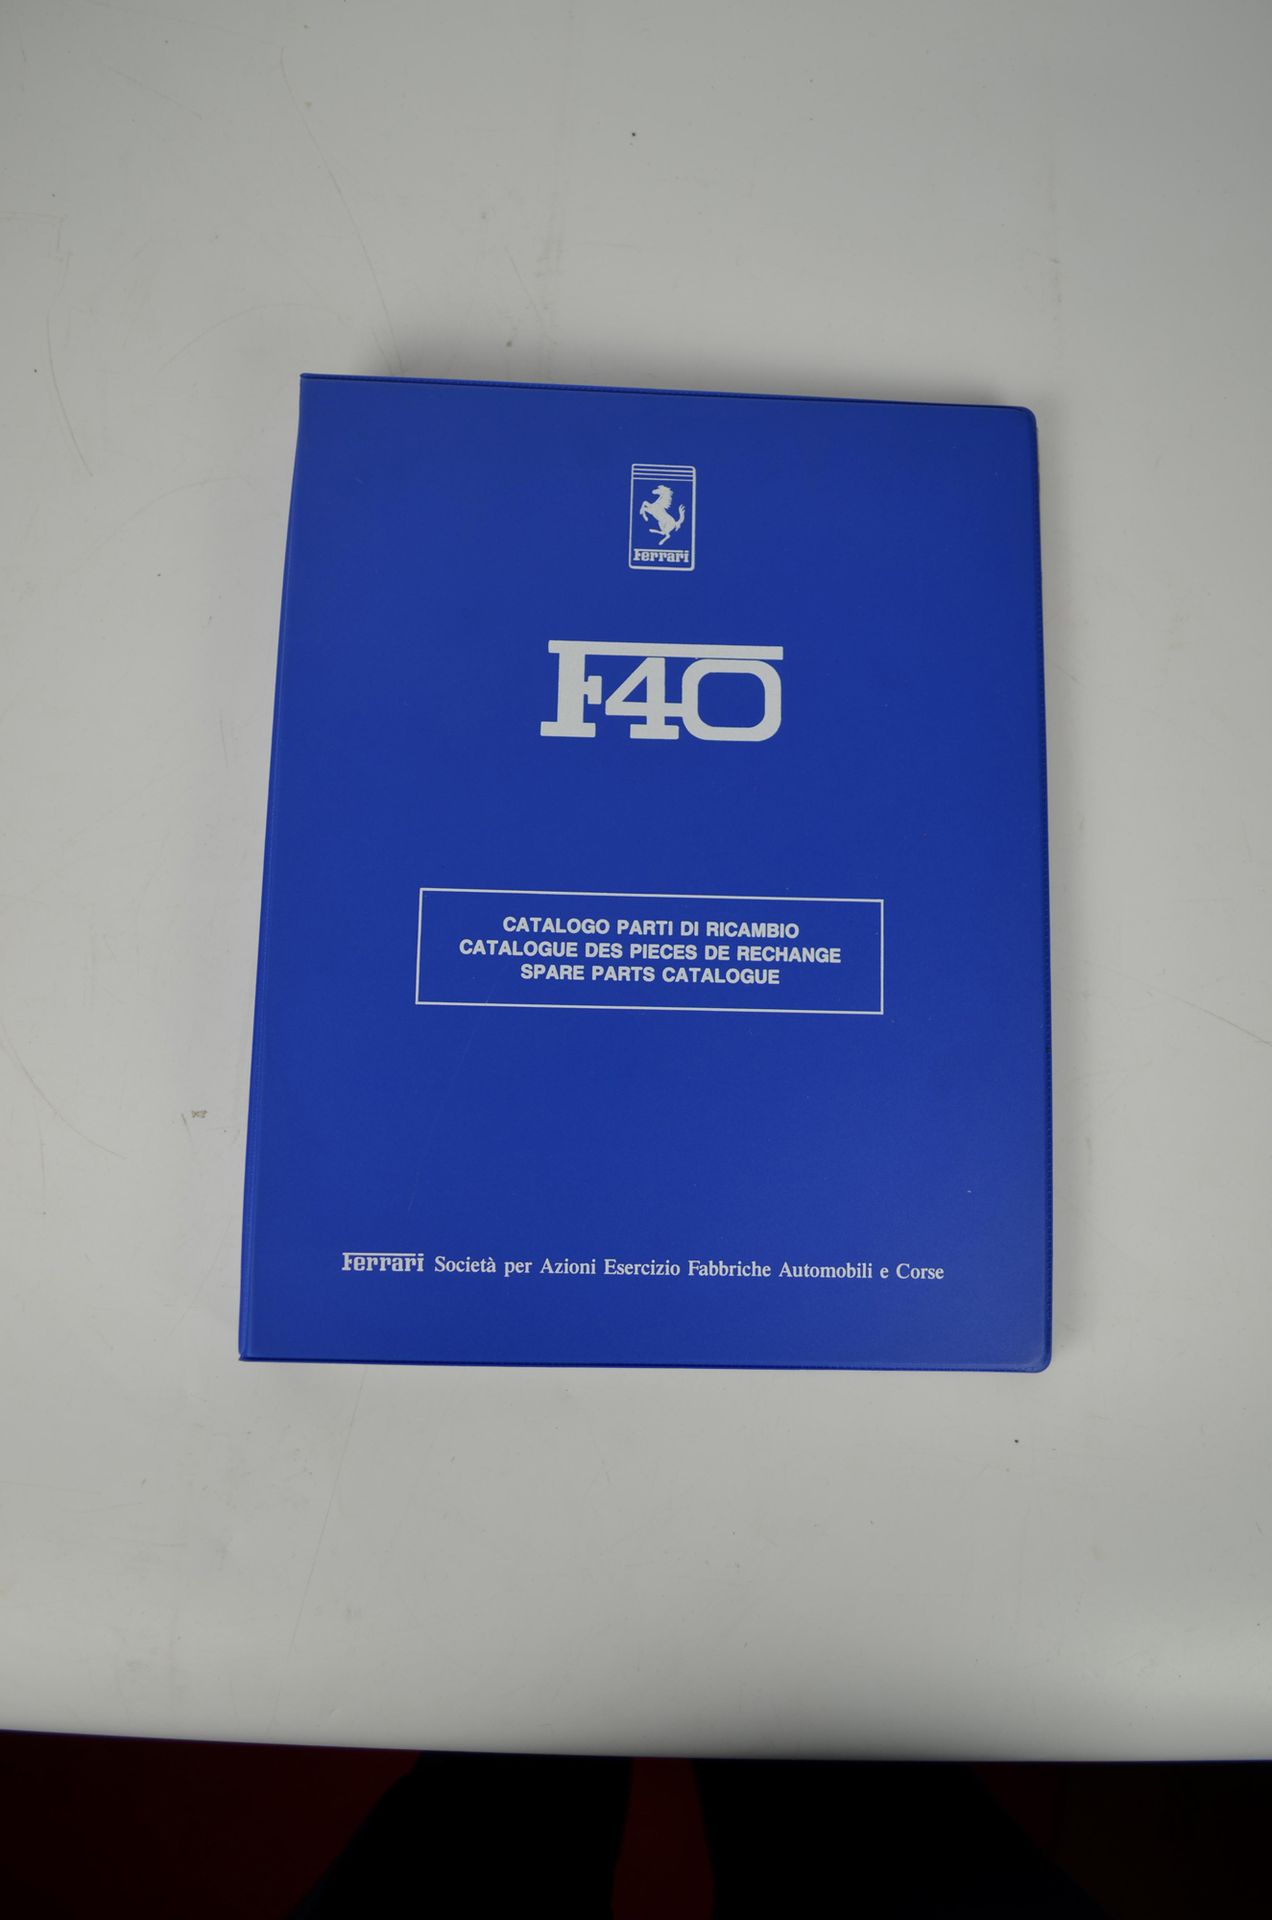 Catalogue de pièces de rechange F40 Catálogo de piezas de recambio F40